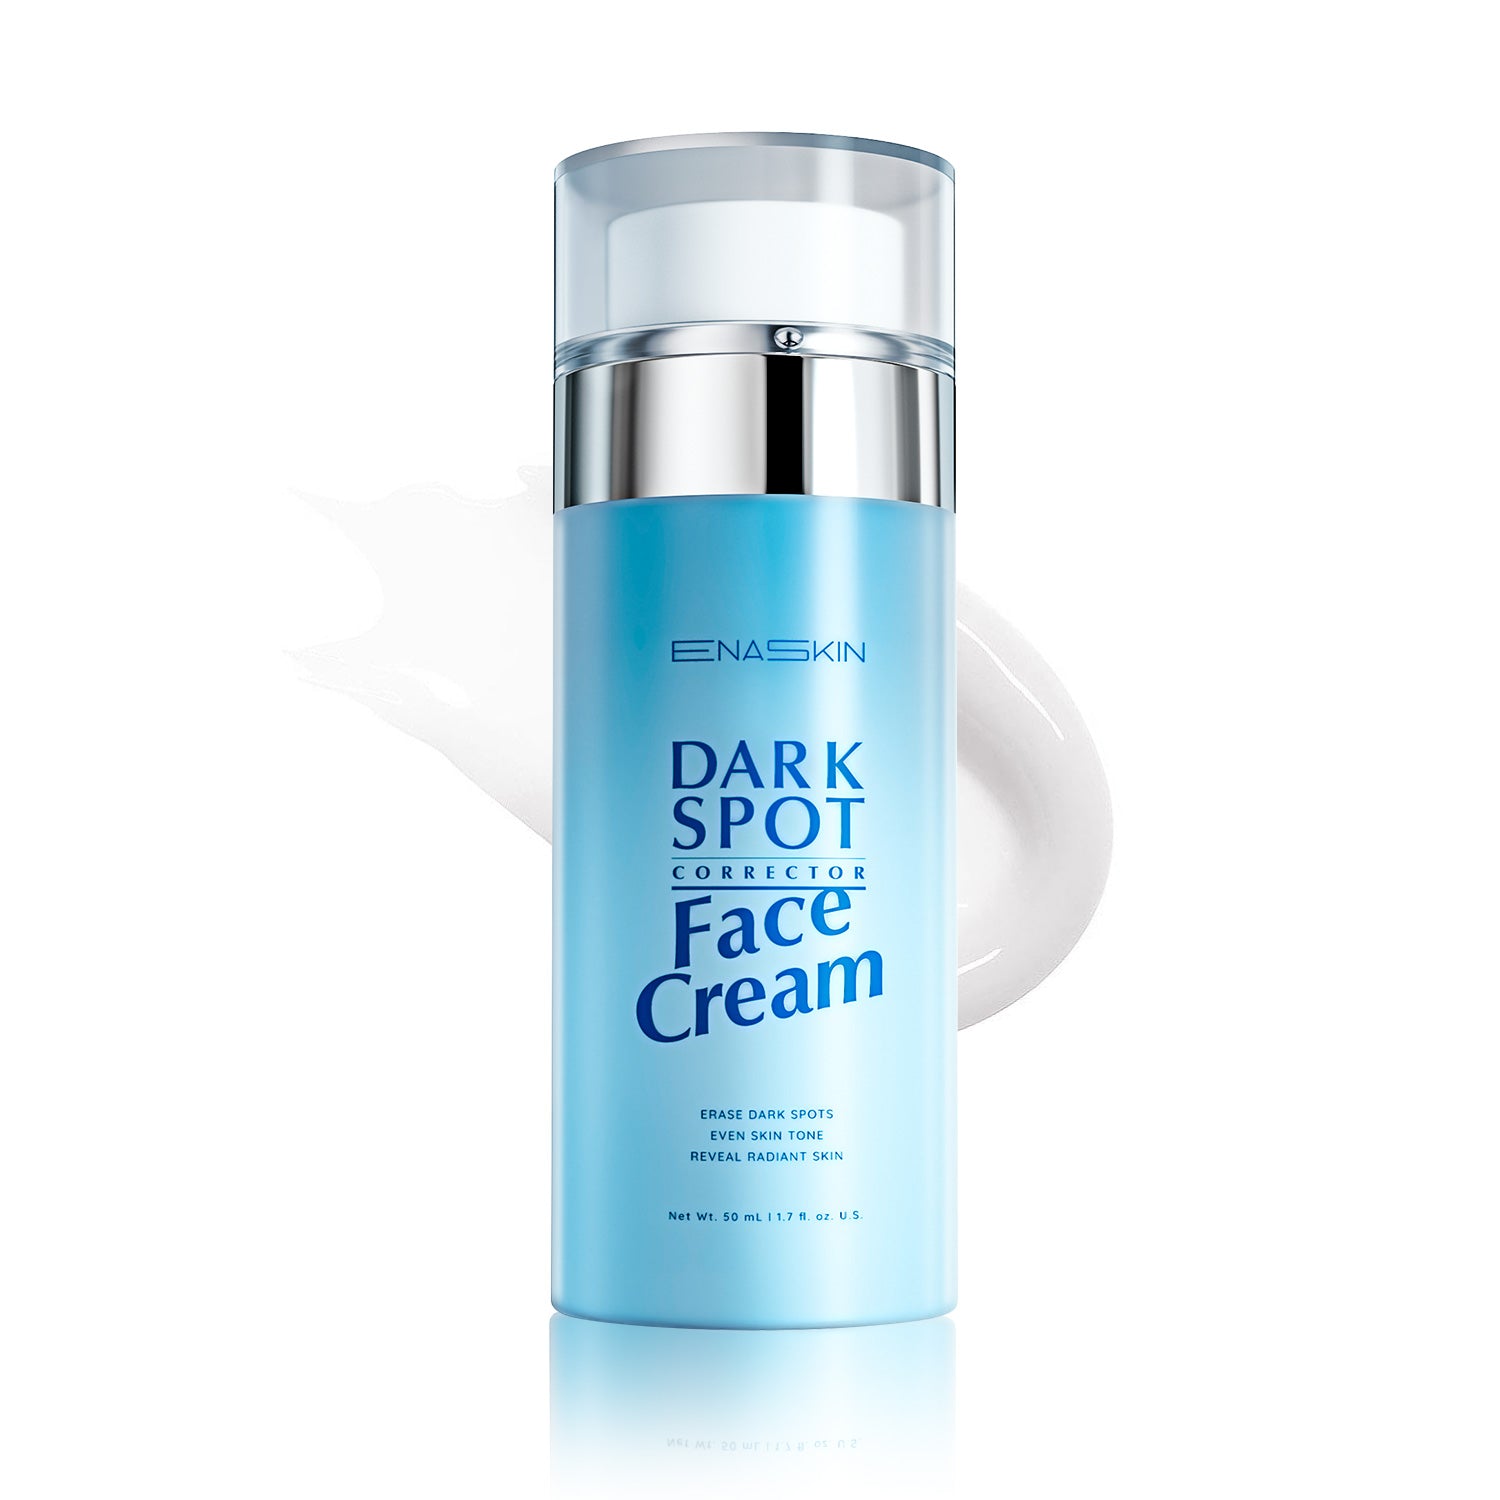 Dark Spot Corrector Face Cream